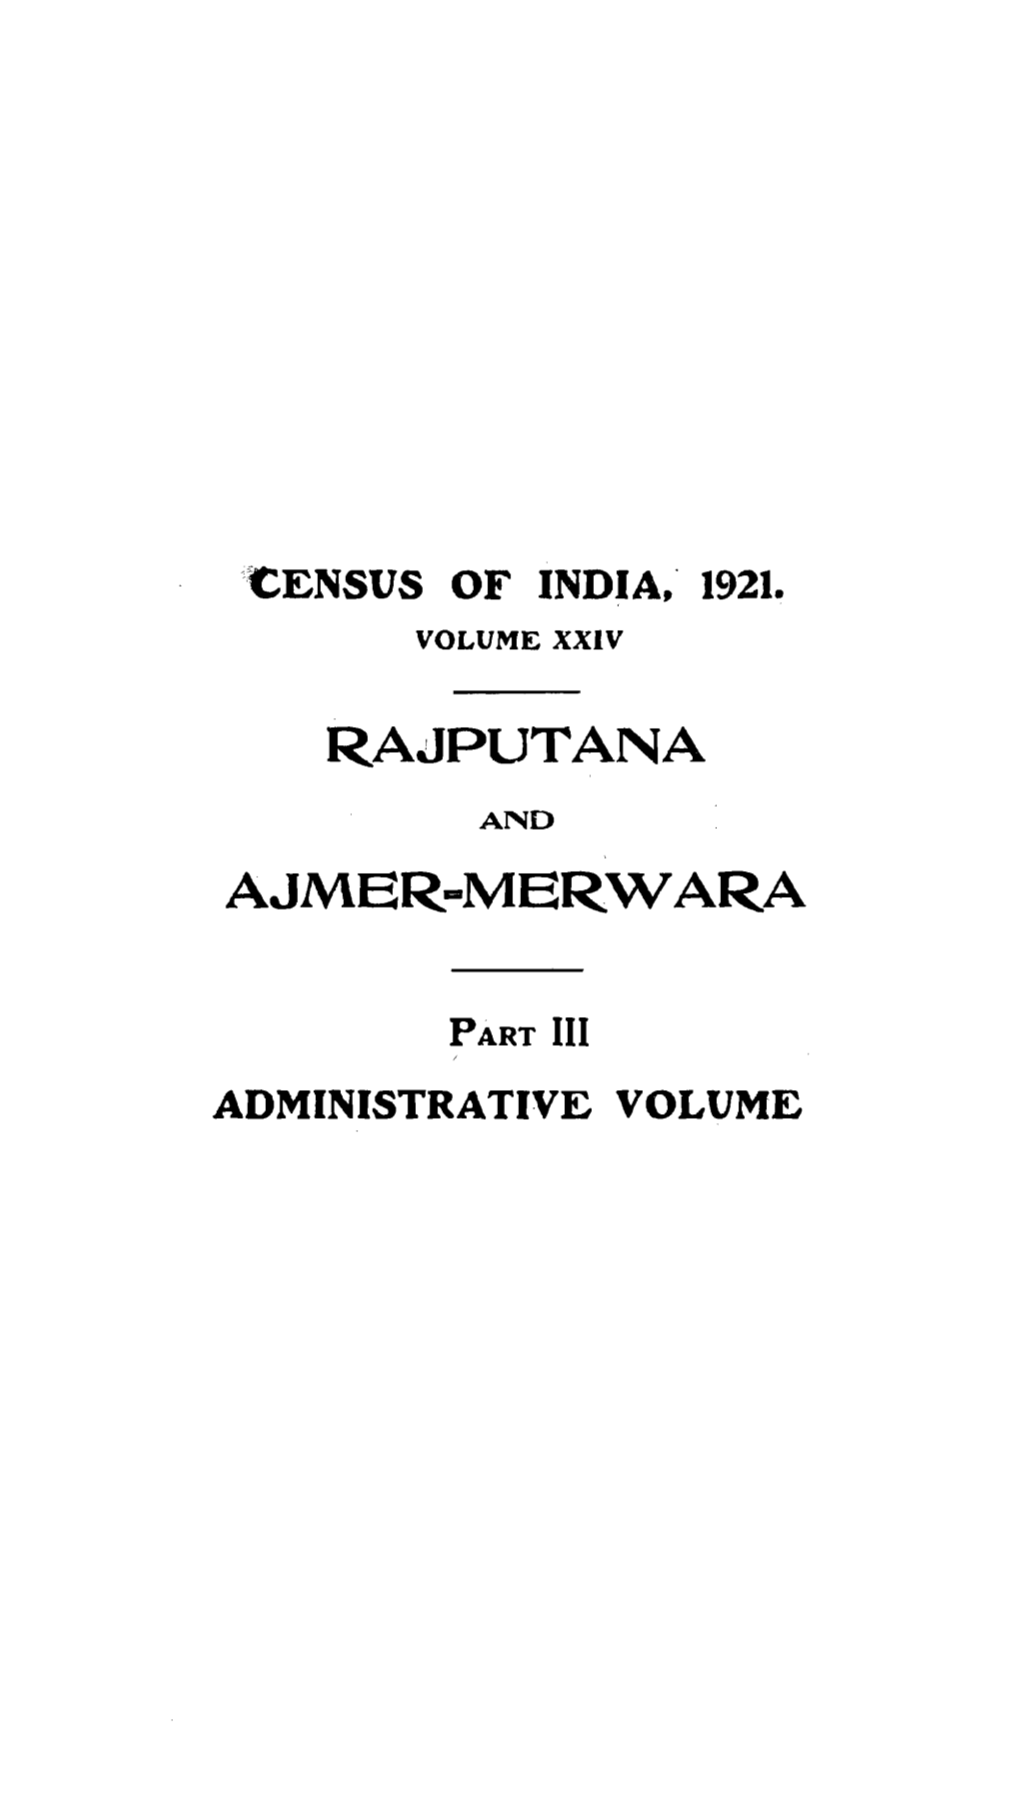 Rajputana and Ajmer-Merwara, Part III, Vol-XXIV, Rajasthan